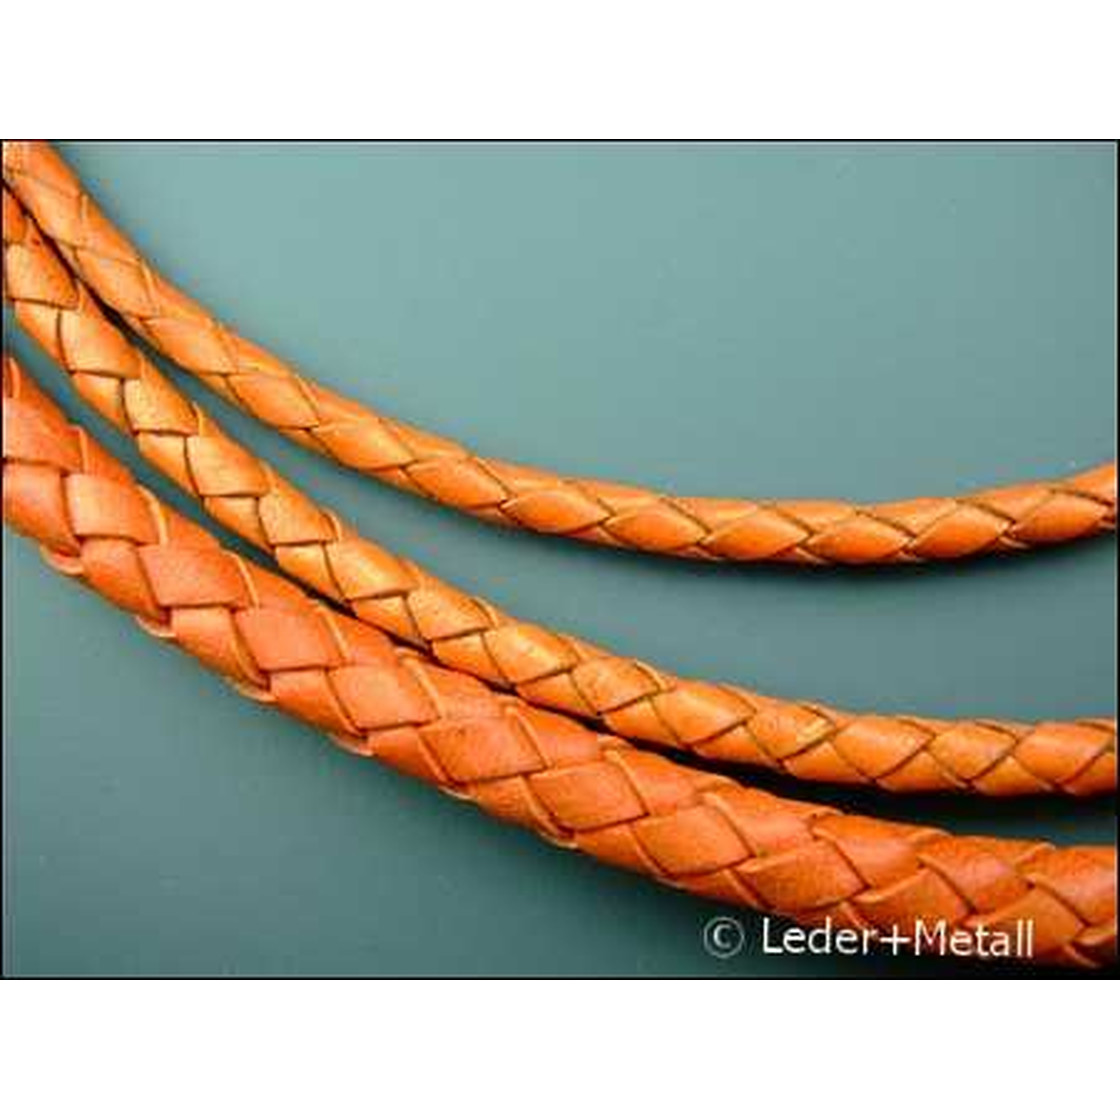 Round braided leather cord Ø4,0mm - orange, 5,80 €